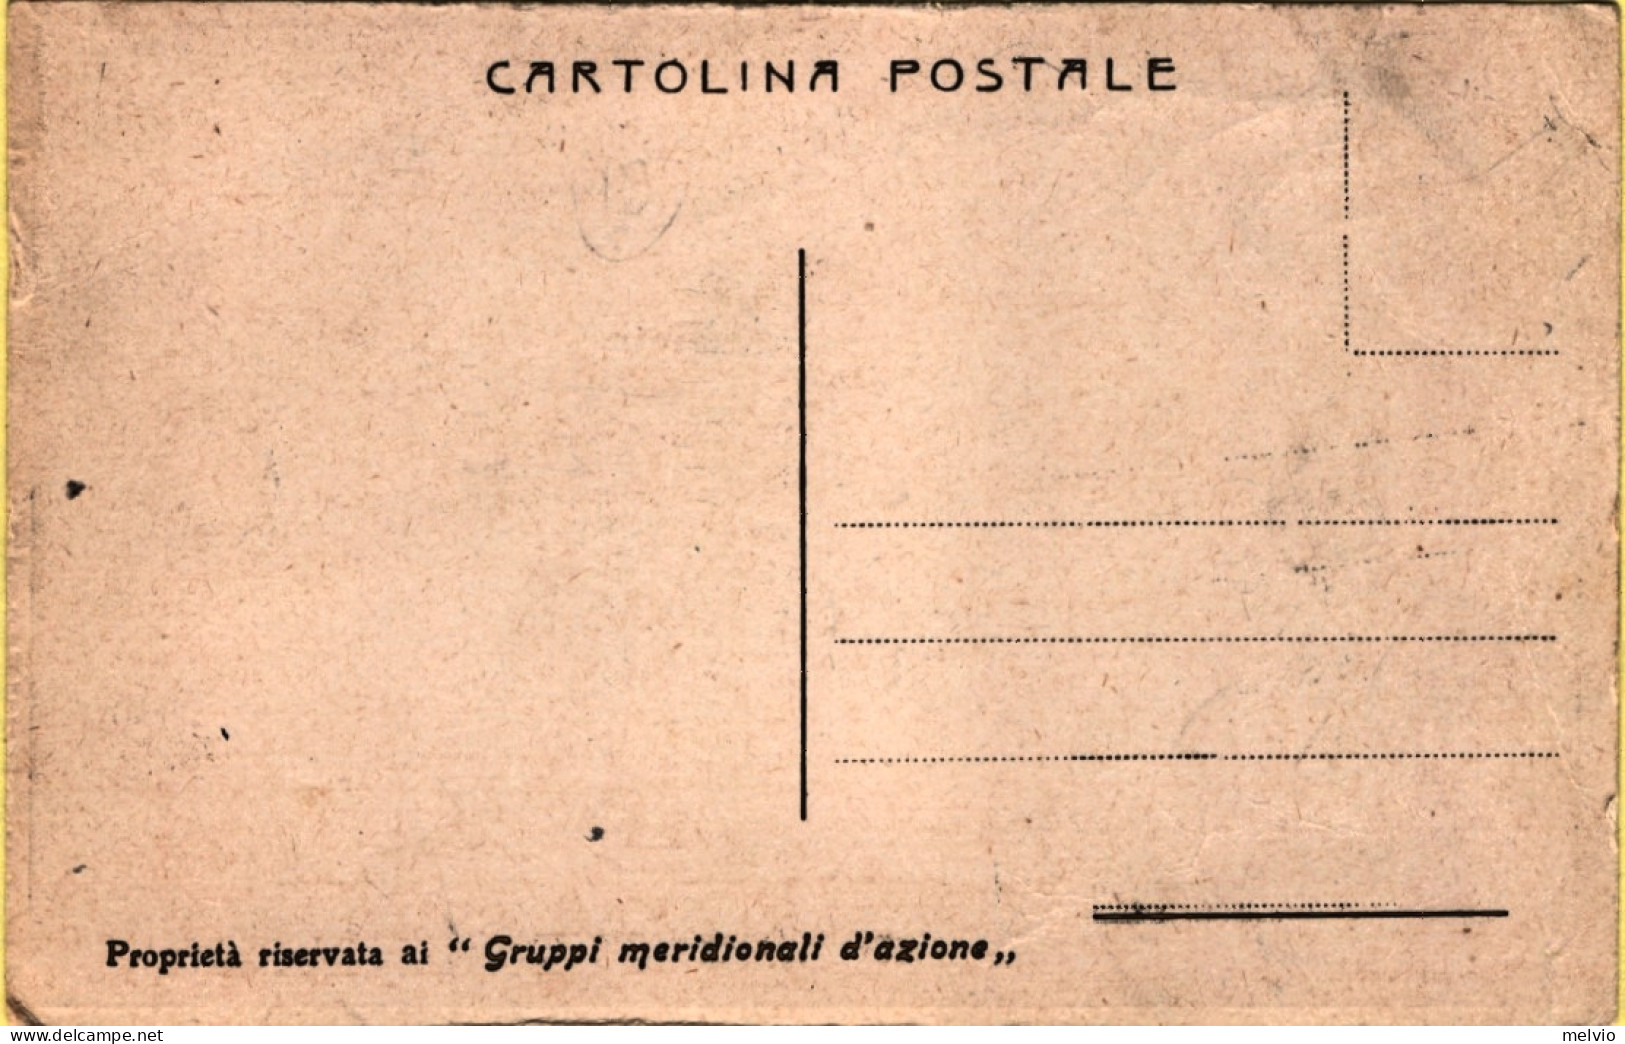 1950circa-Dazi Doganali Protettivi, Redenzione Cartolina A Cura Dei Gruppi Merid - Pubblicitari